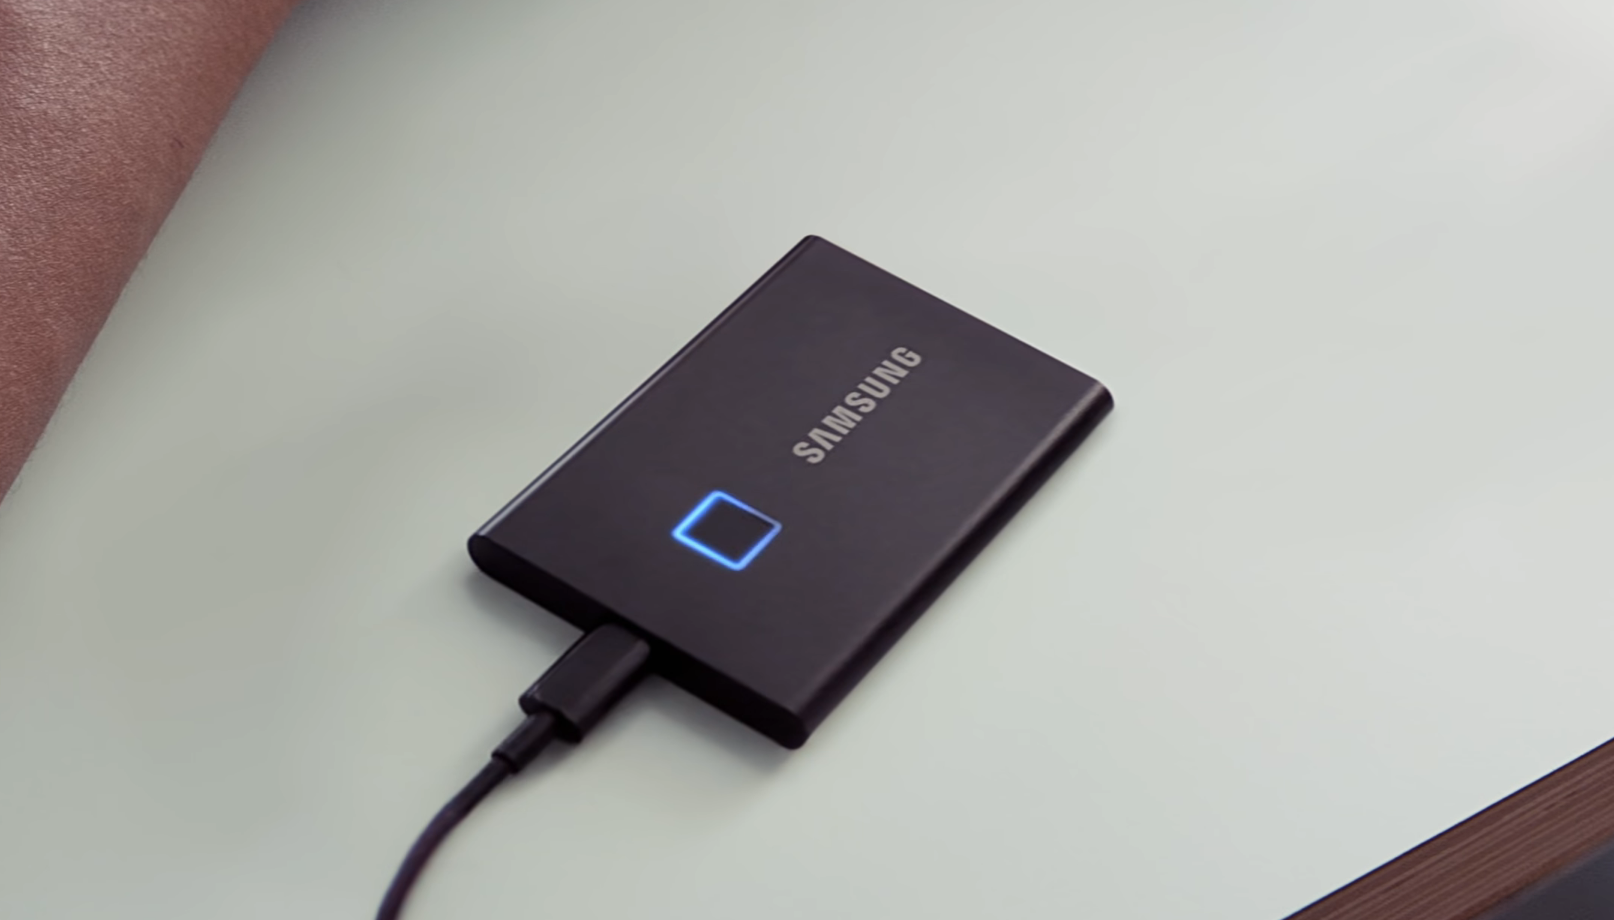 Швидше і безпечніше: Samsung презентувала SSD T7 Touch зі сканером відбитків, швидкістю 1050 Мб/с та USB 3.2